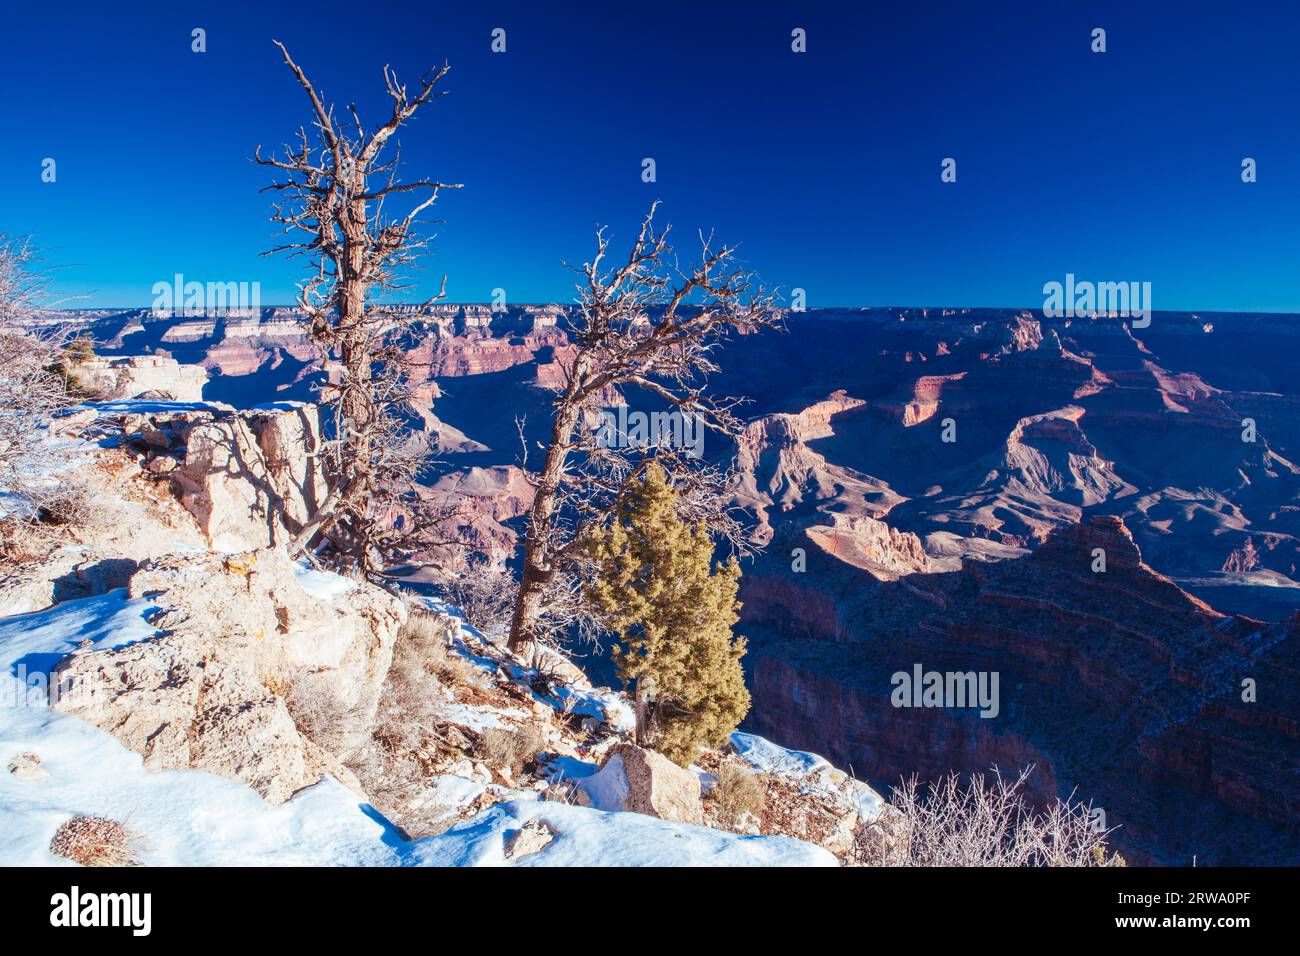 Vue imprenable en journée en hiver autour de Grandview point dans le Grand Canyon, Arizona, États-Unis Banque D'Images